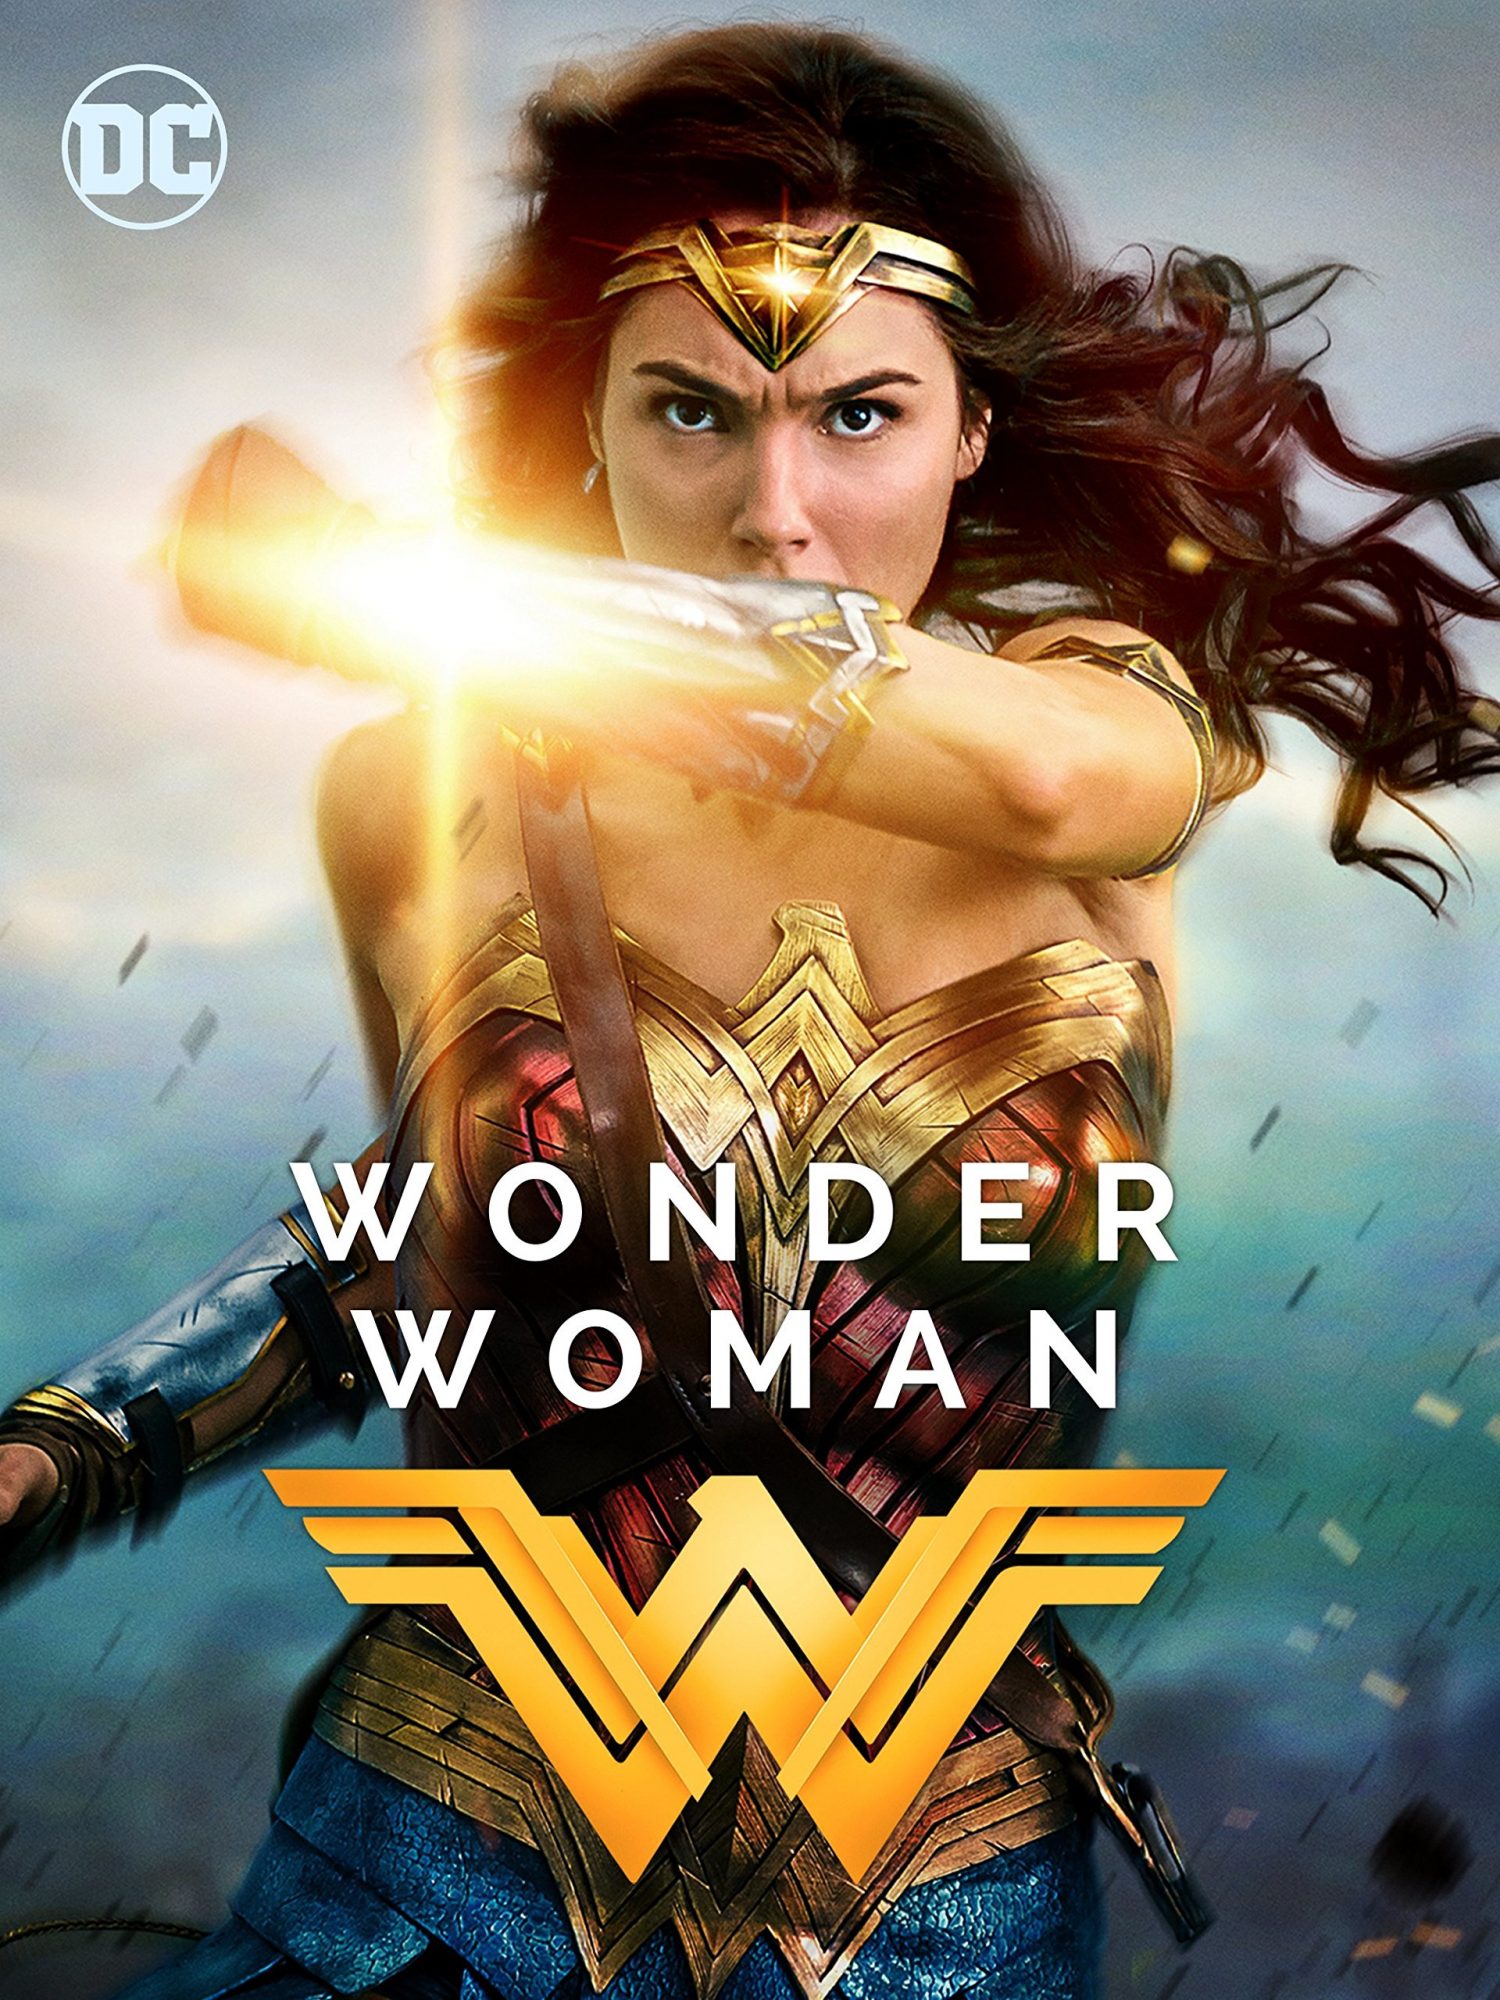 Cine de Verano en La Unión de Hortaleza: Wonder Woman